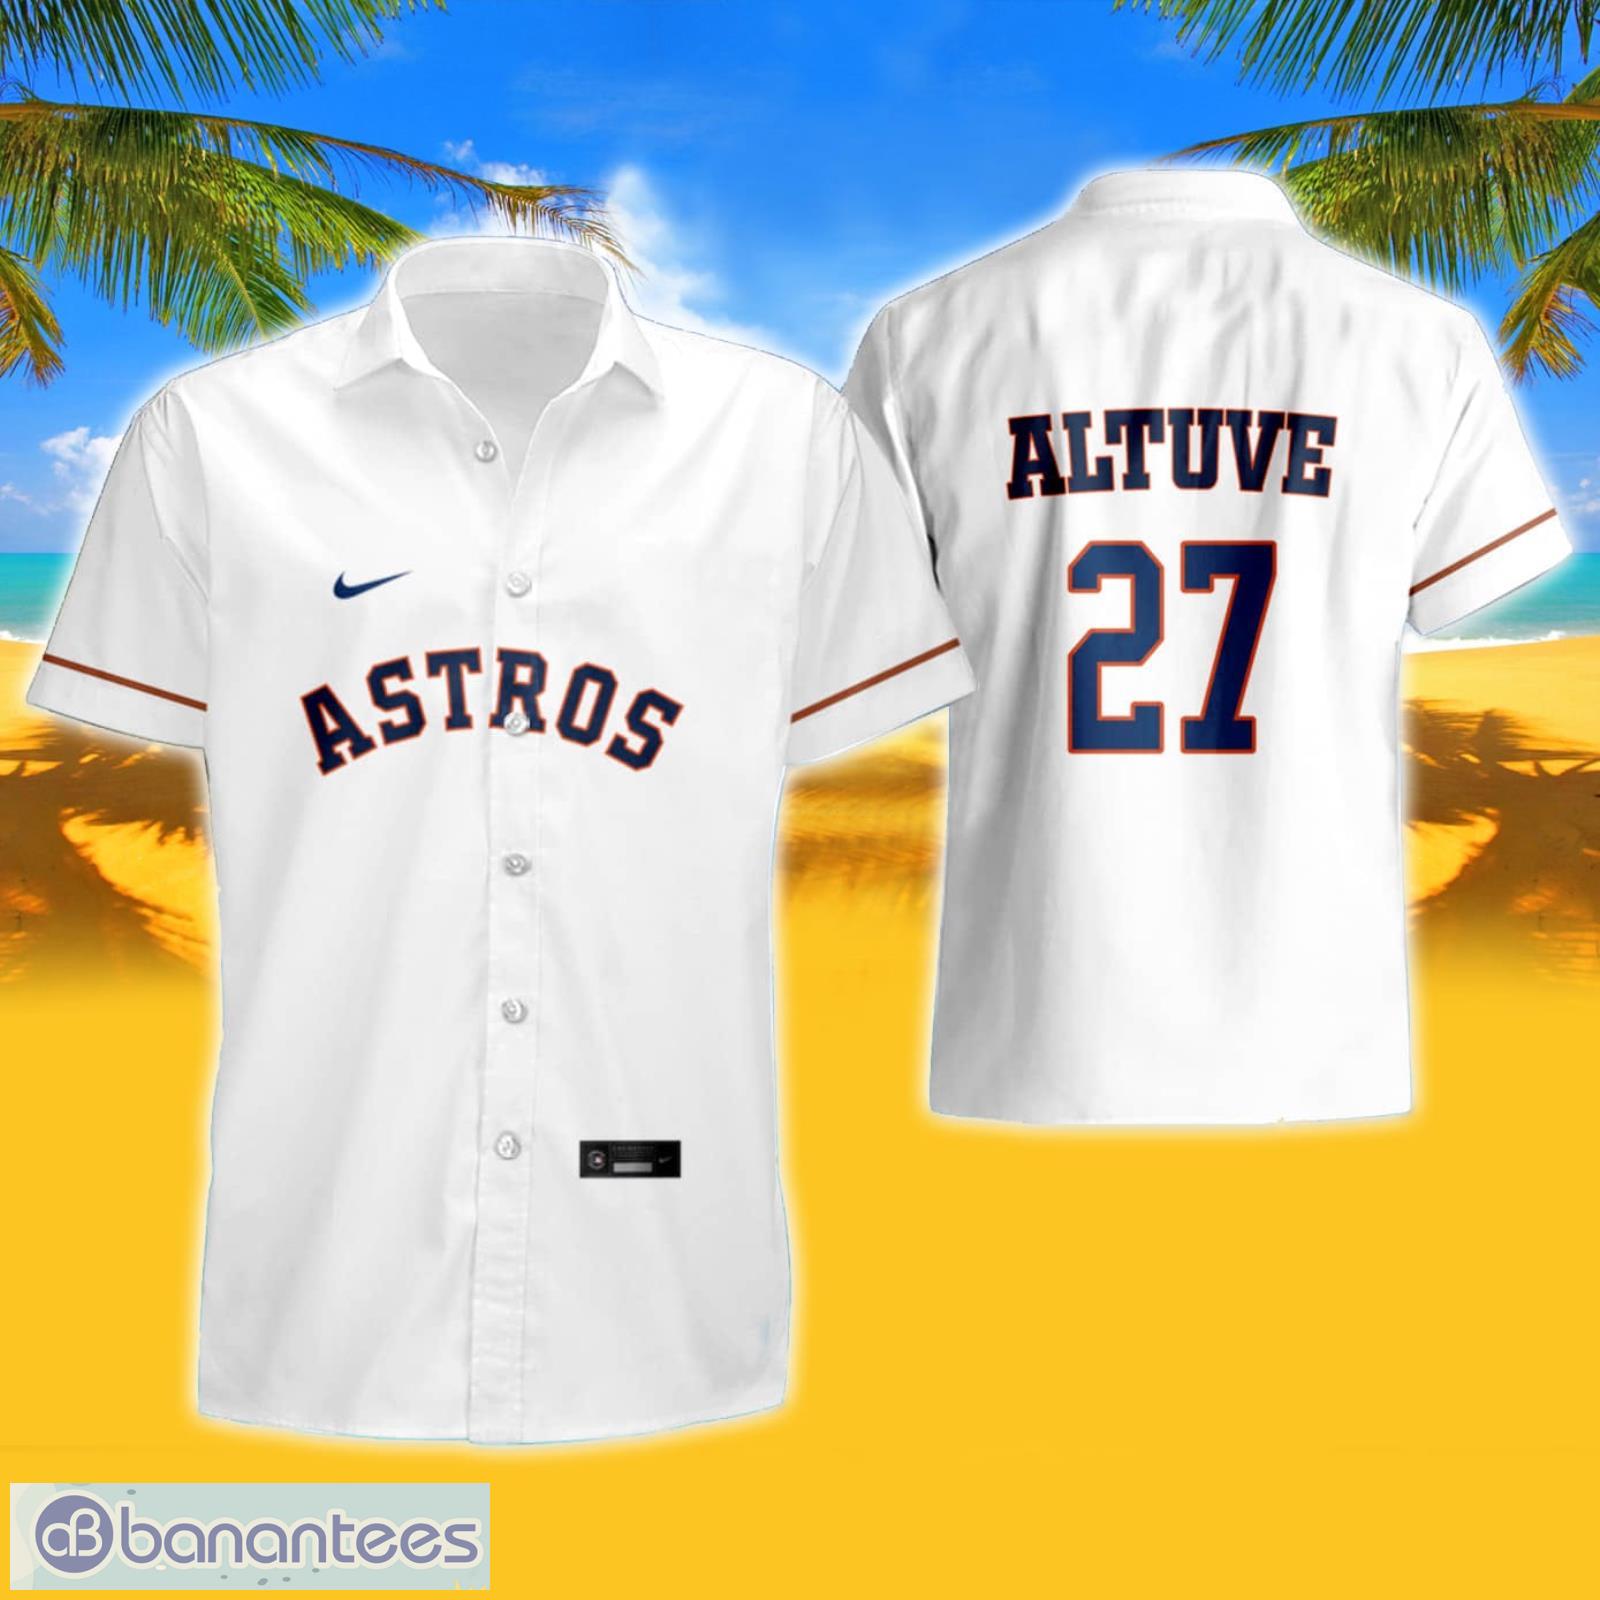 Houston Astros Baseball Jersey 3d All Over 2023 Summer Hawaiian Shirt And  Shorts - Banantees